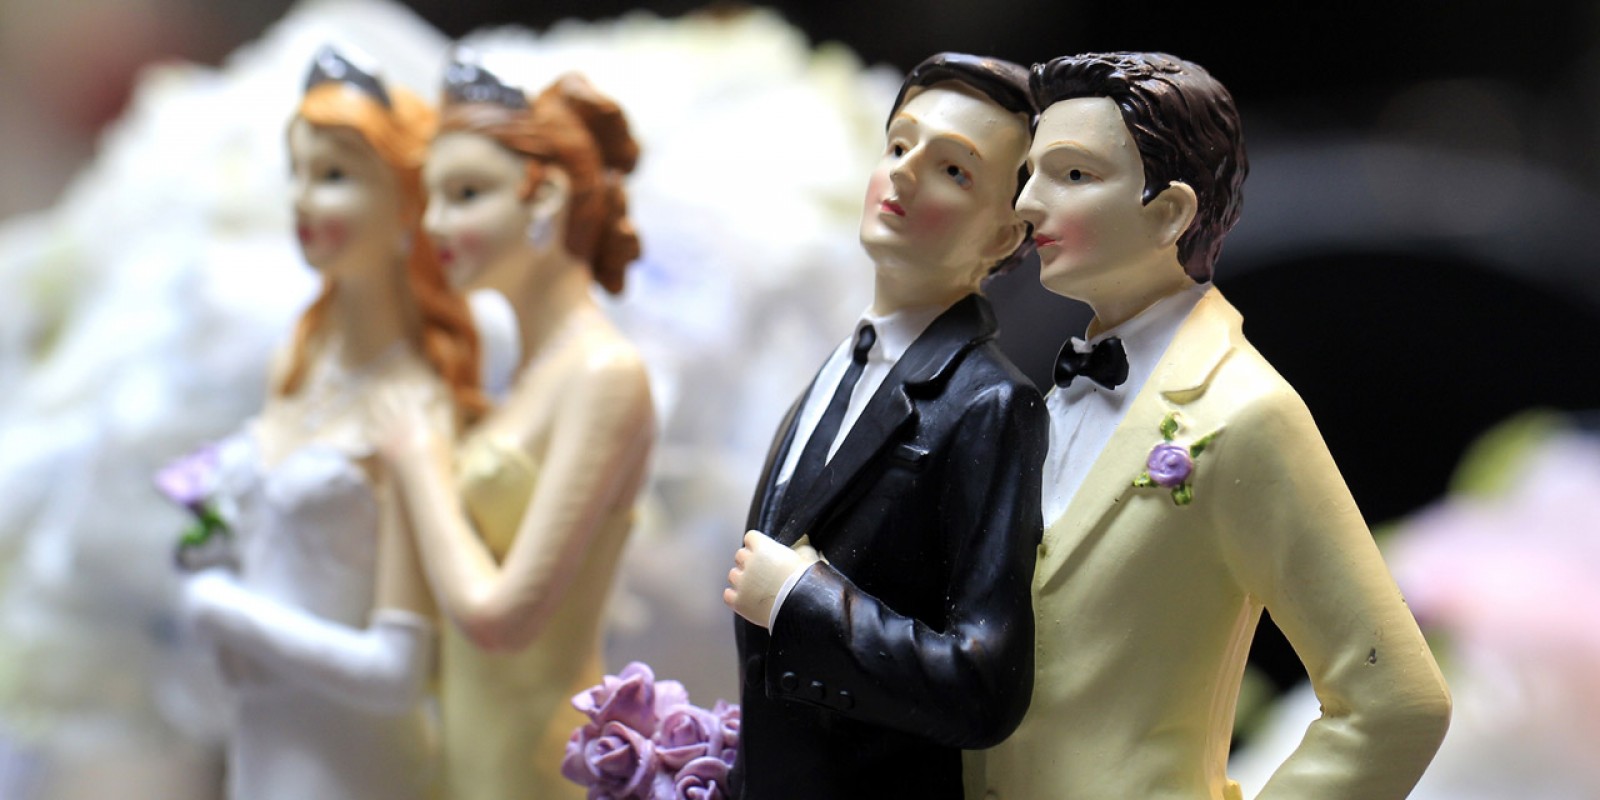 Mariage pour tous : 10 ans après le bilan